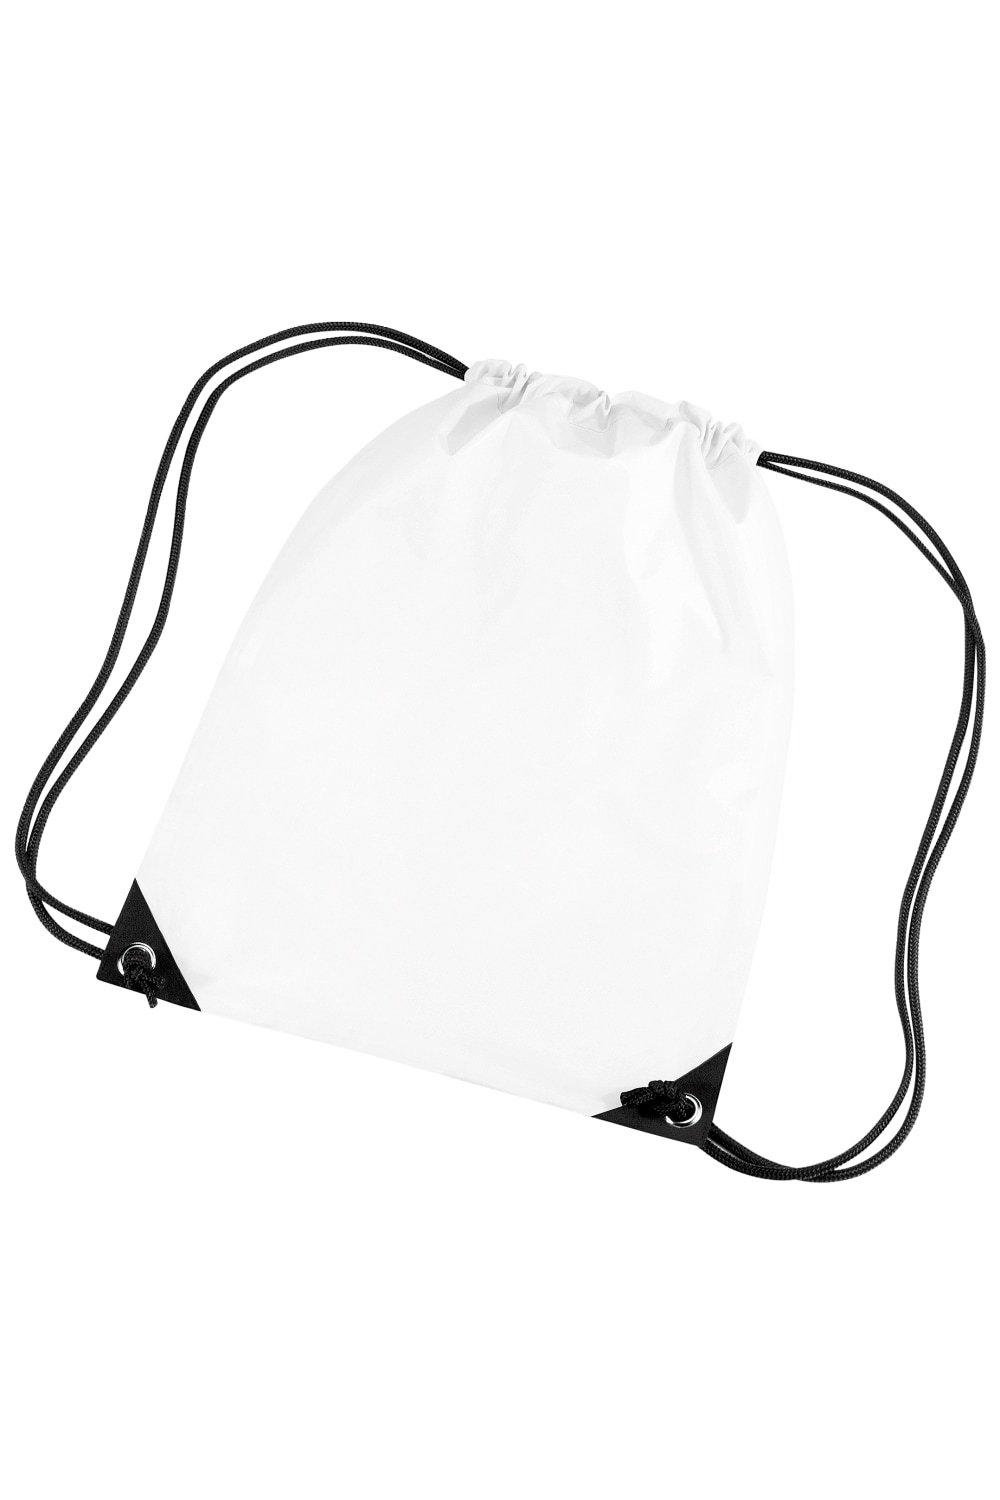 Водонепроницаемая сумка Gymsac премиум-класса (11 литров) Bagbase, белый